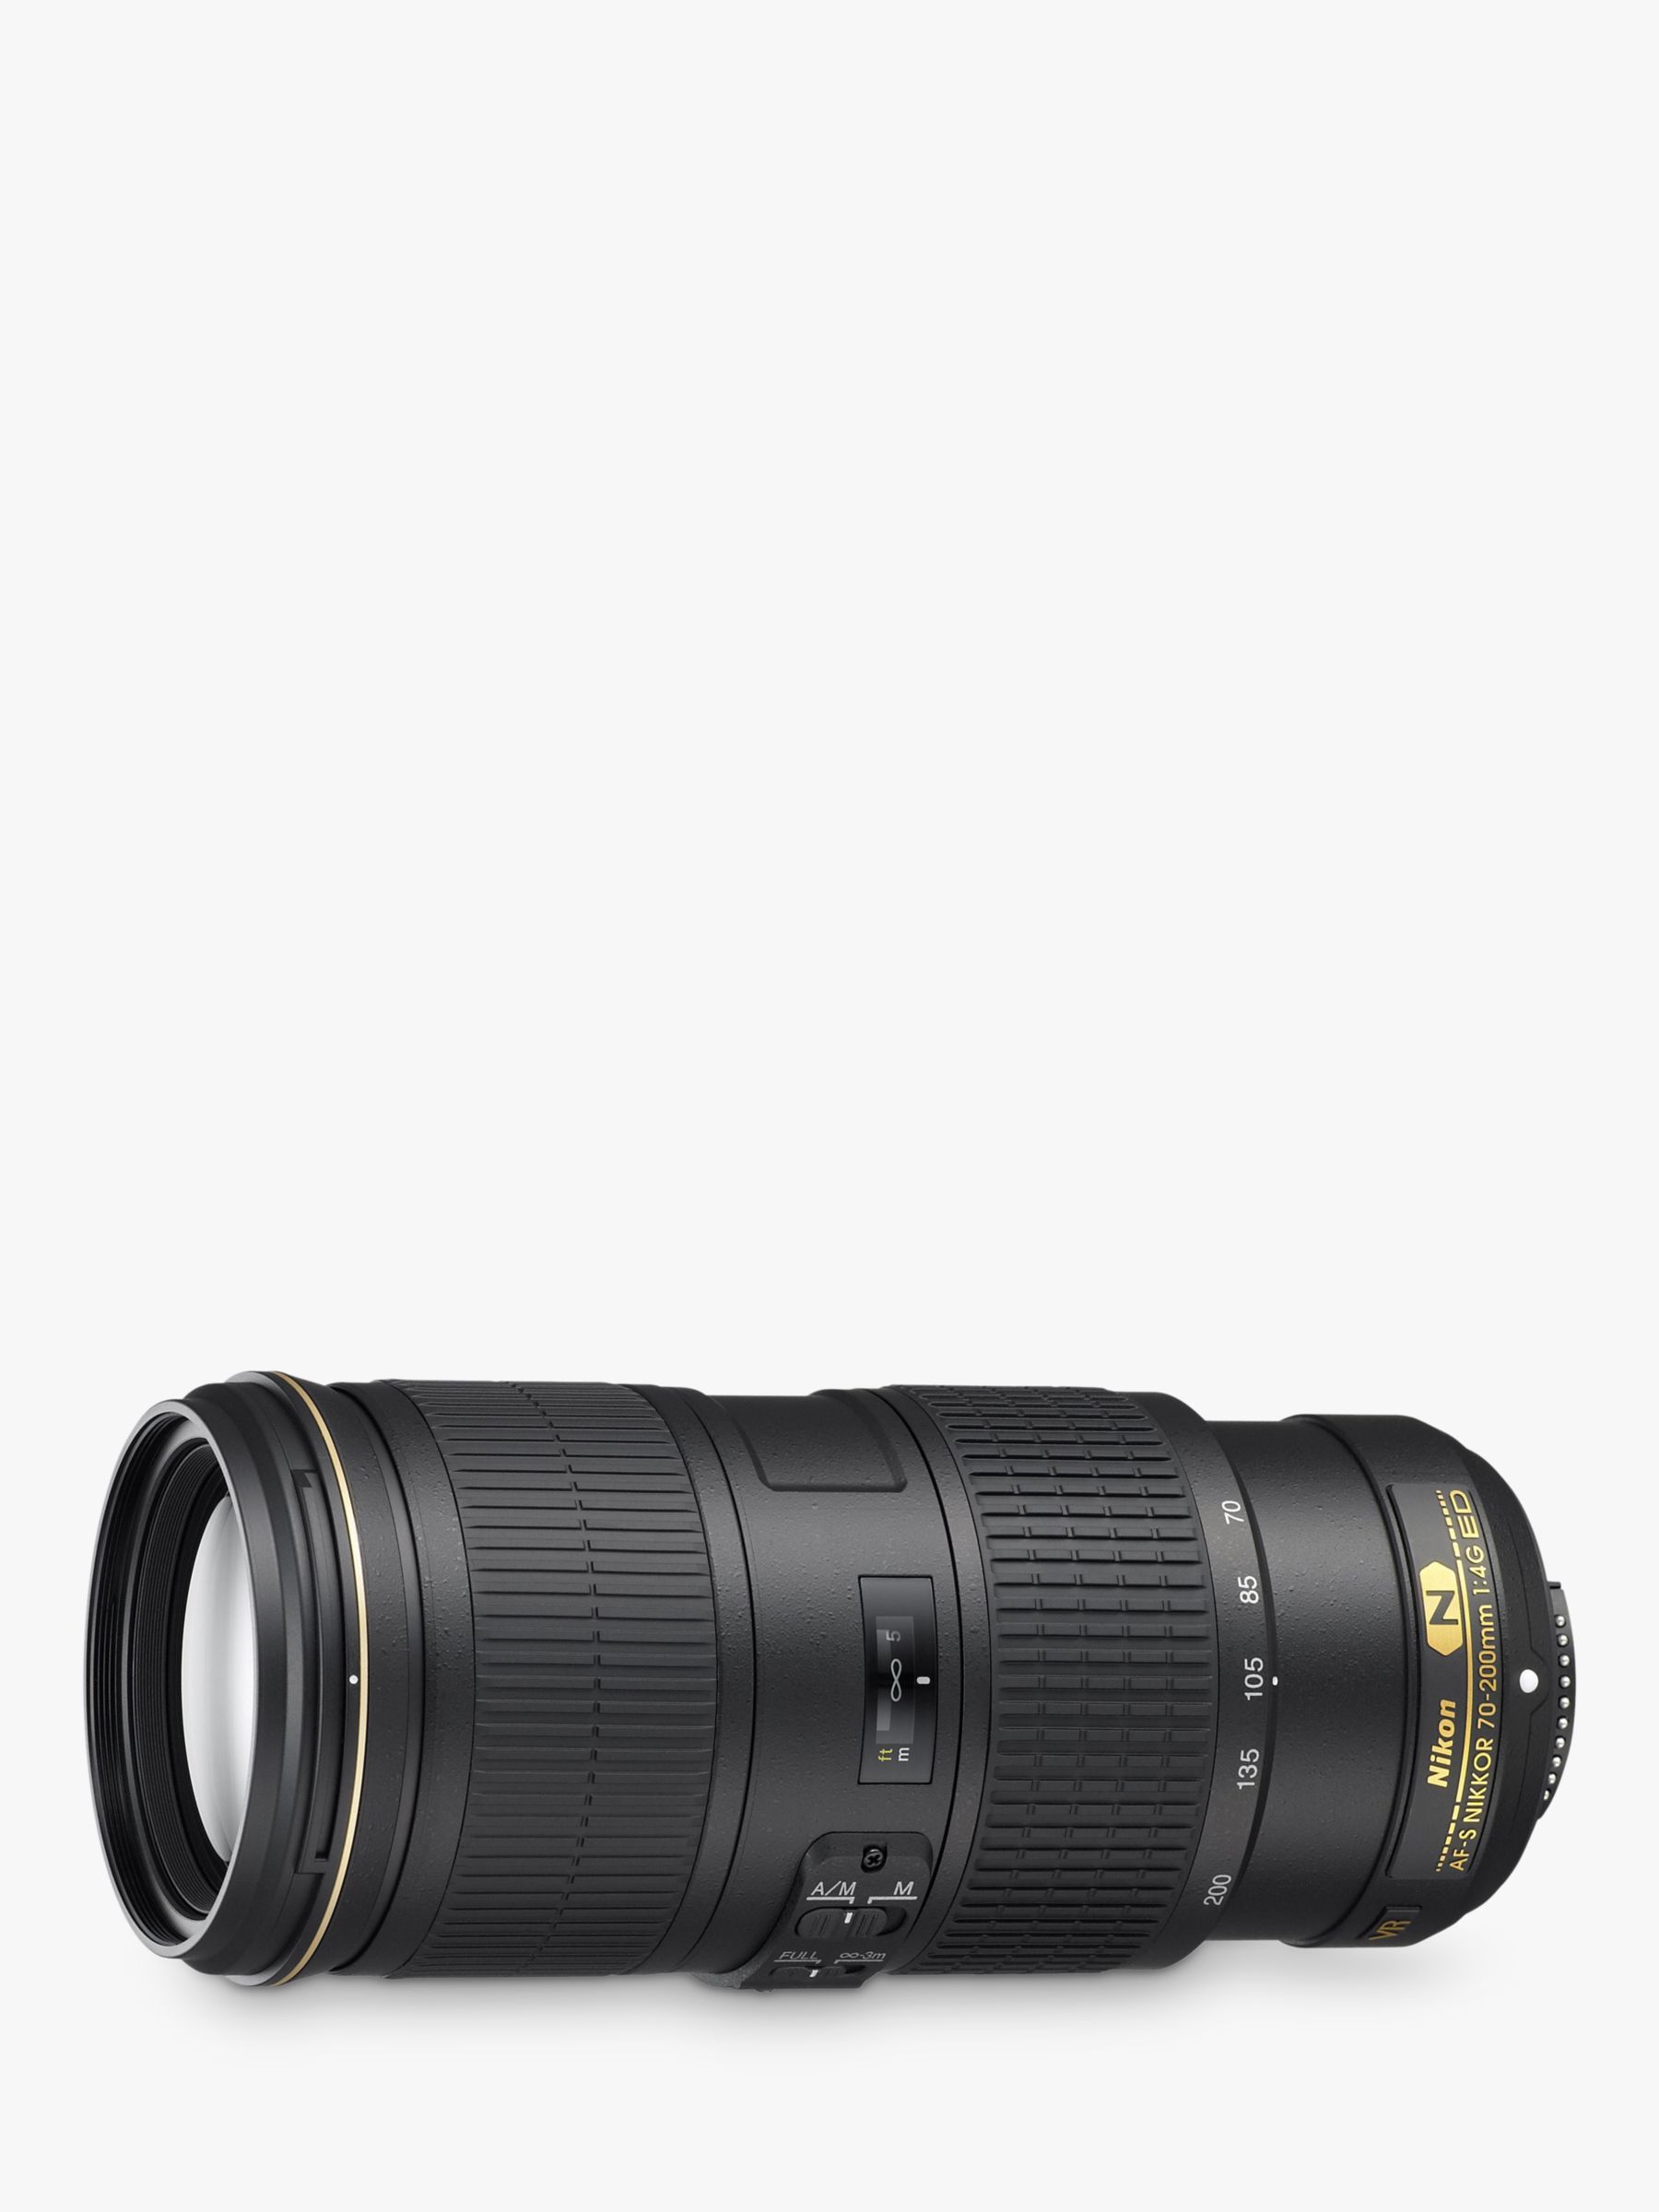 Nikon FX 70-200mm f/4G ED VR AF-S Telephoto Lens